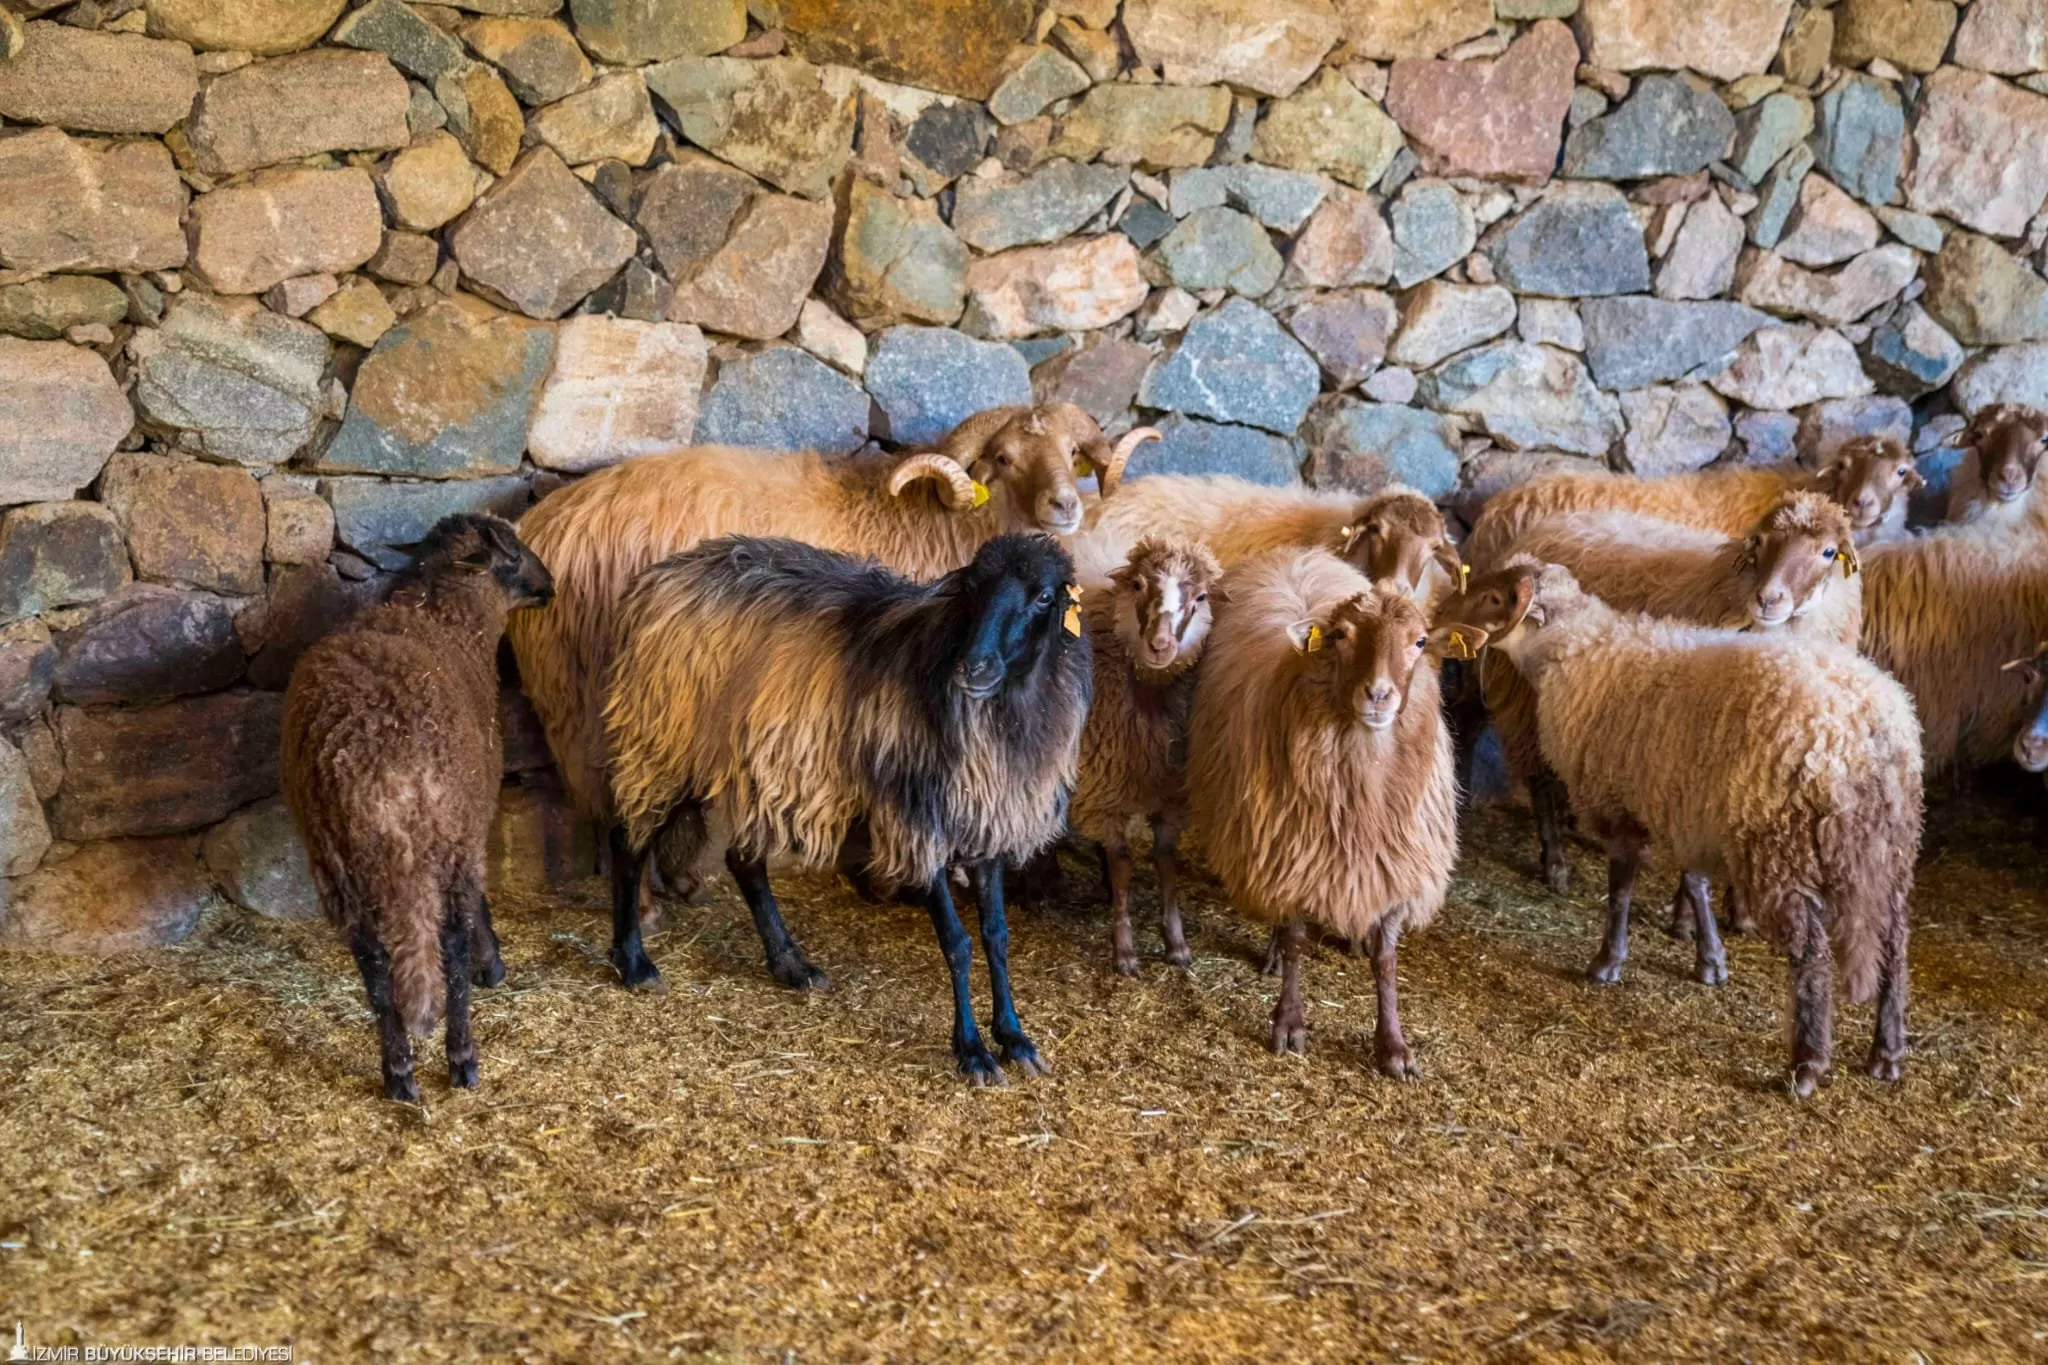 İzmir'e özgü ve nesli tükenme tehlikesi altındaki Kaçeli koyunları, İzmir Büyükşehir Belediyesi tarafından Güzelbahçe Olivelo Yaşayan Parkı'na taşındı.